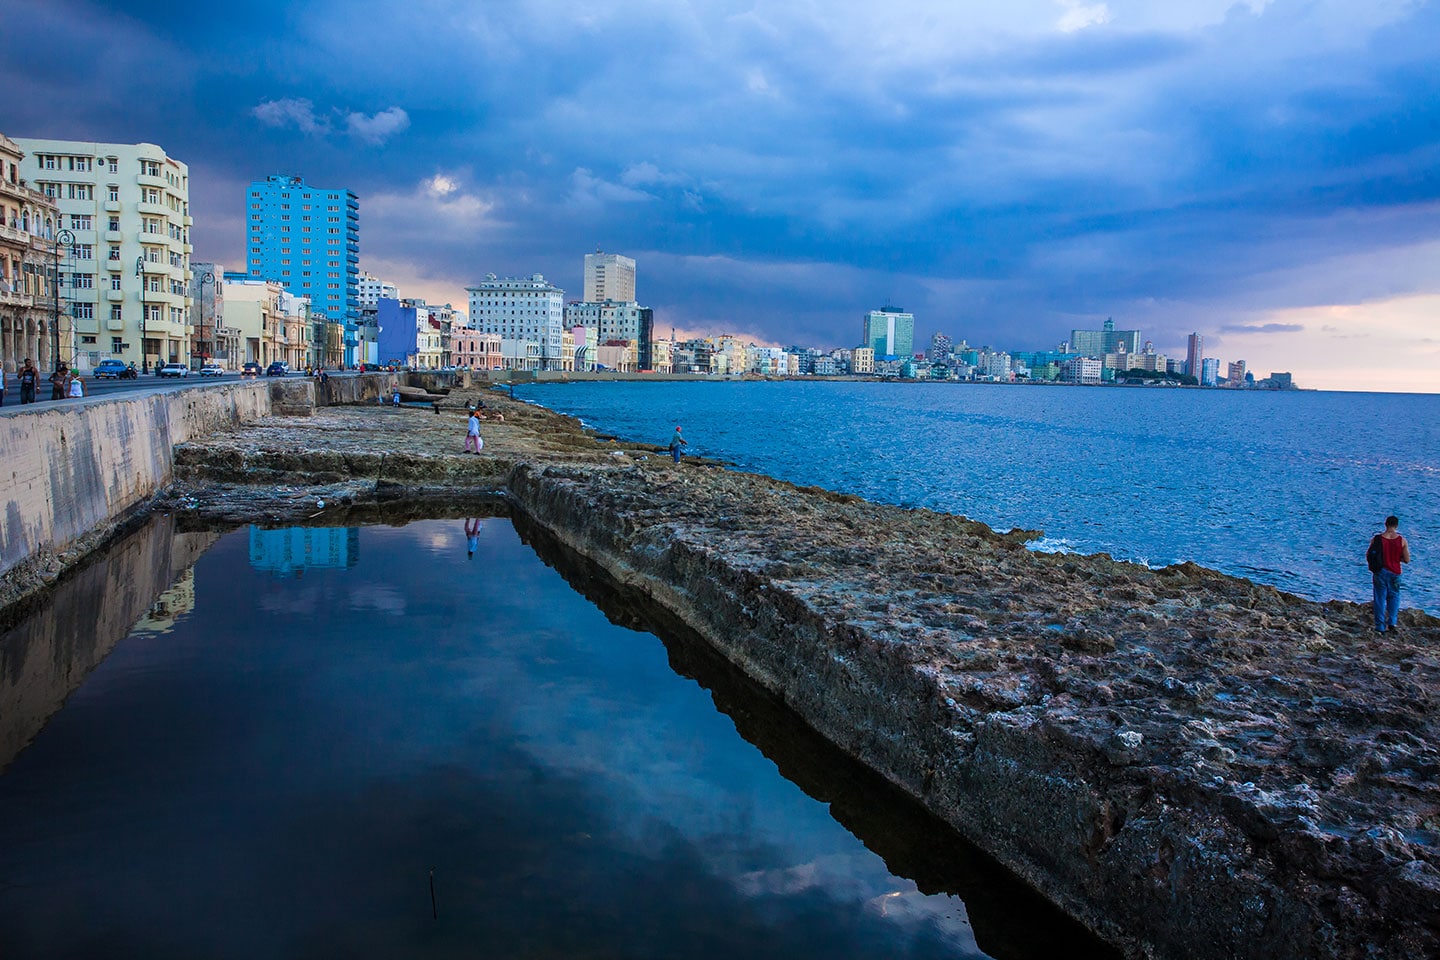 Boardwalk of Havana, Cuba also known as the Malecon